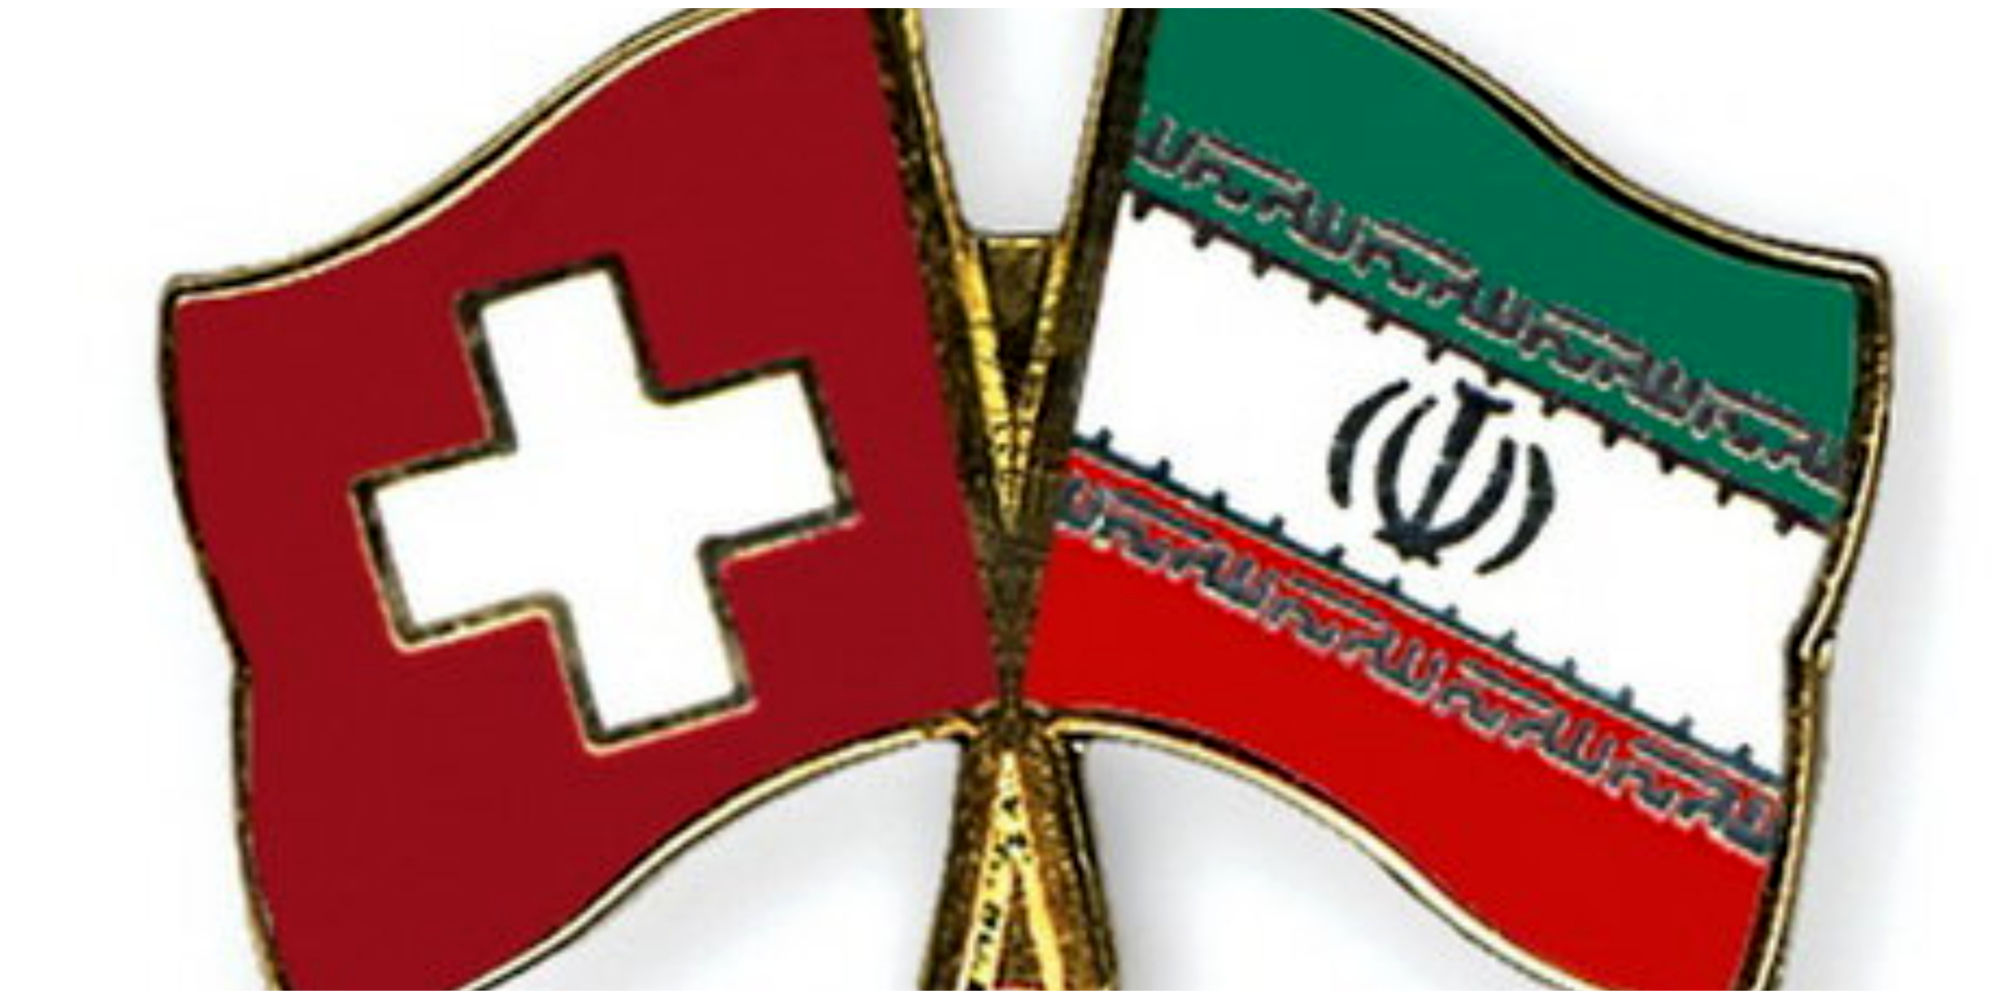  دو مهاجم به سفارت ایران در سوئیس بازداشت شدند